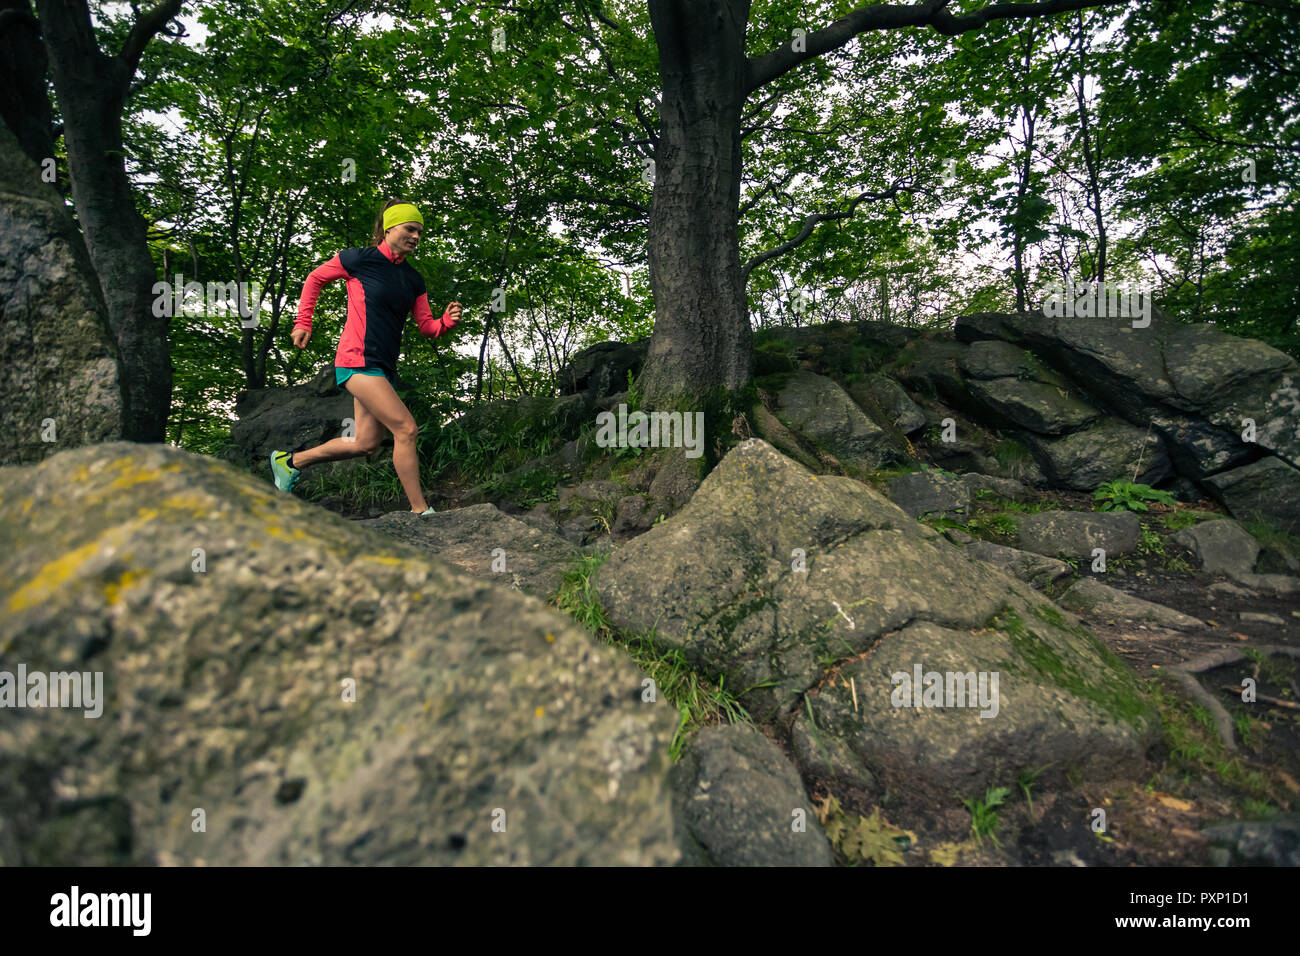 Trail Running Girl im grünen Wald. Ausdauer sport training. Weibliche Trail Runner querfeldein laufen. Sport und Fitness Concept draussen in der Natur. Stockfoto